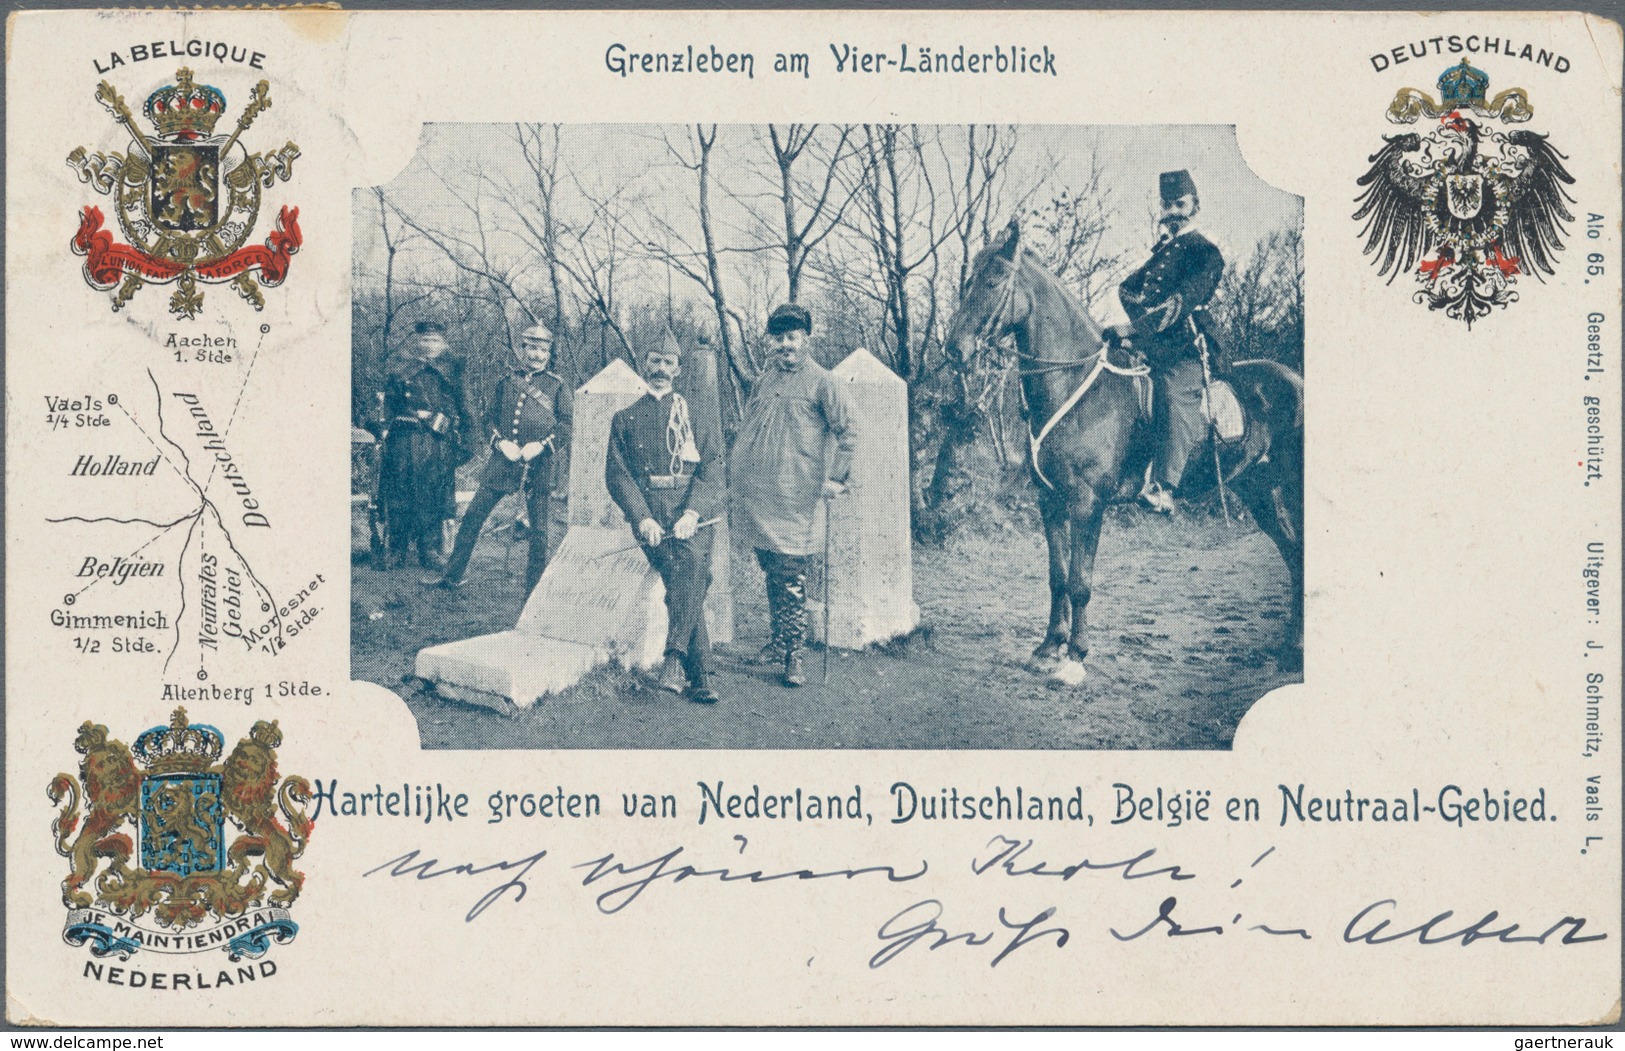 Ansichtskarten: Deutschland: 1892/1940 (ca.), saubere und vielseitige Partie von ca. 203 Topografie-